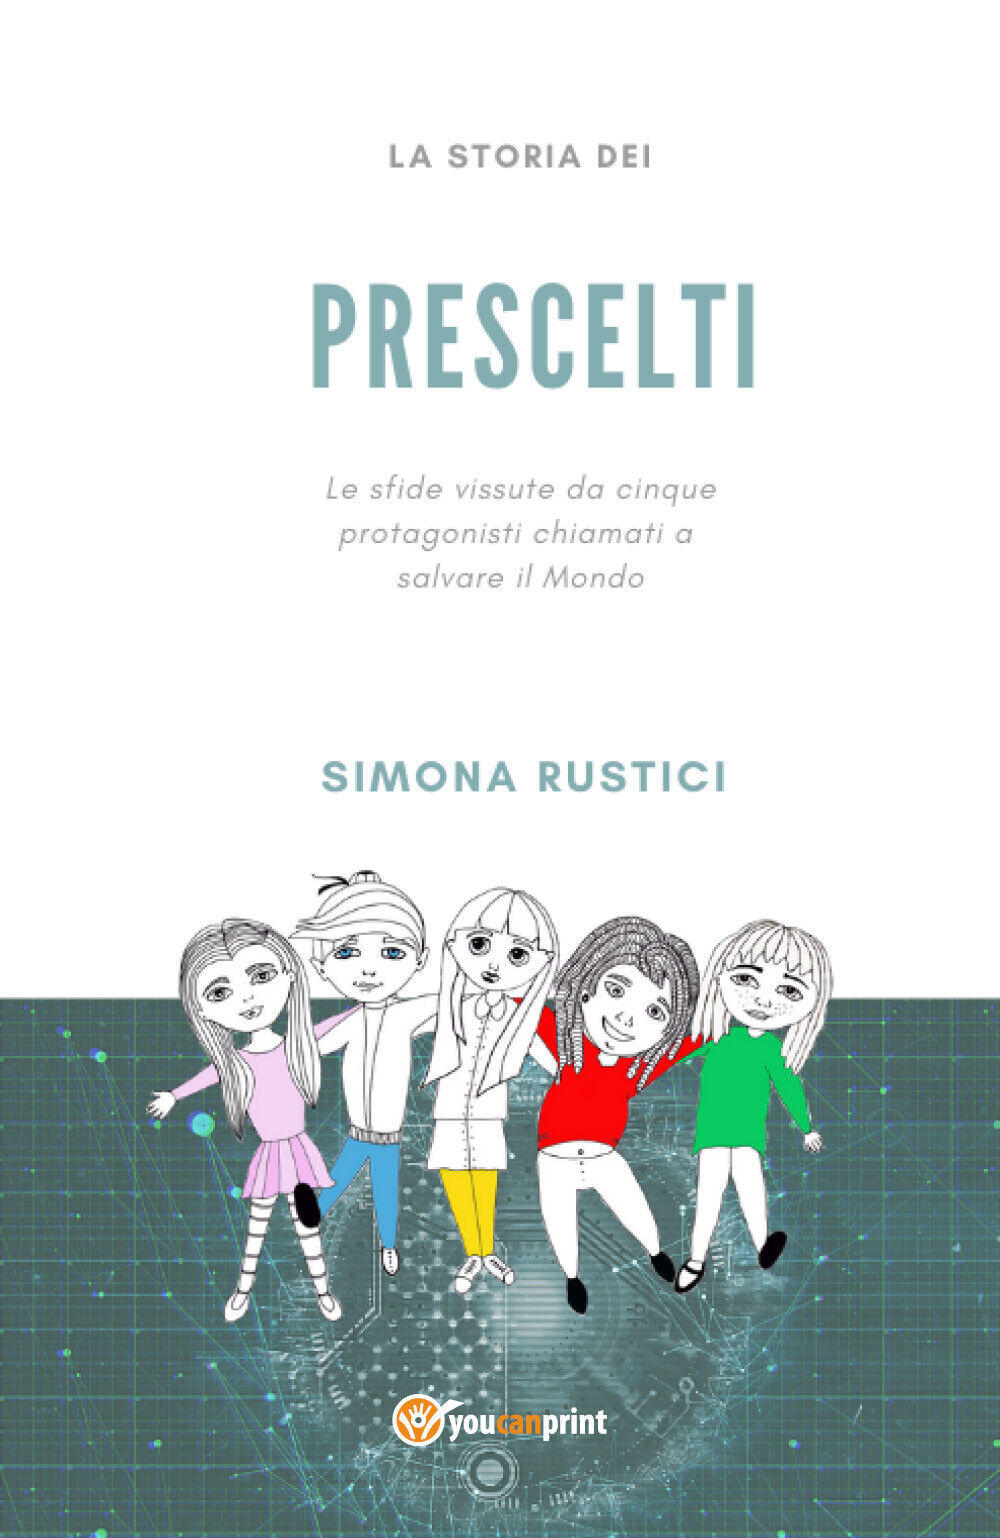  La storia dei prescelti - Simona Rustici,  2020,  Youcanprint